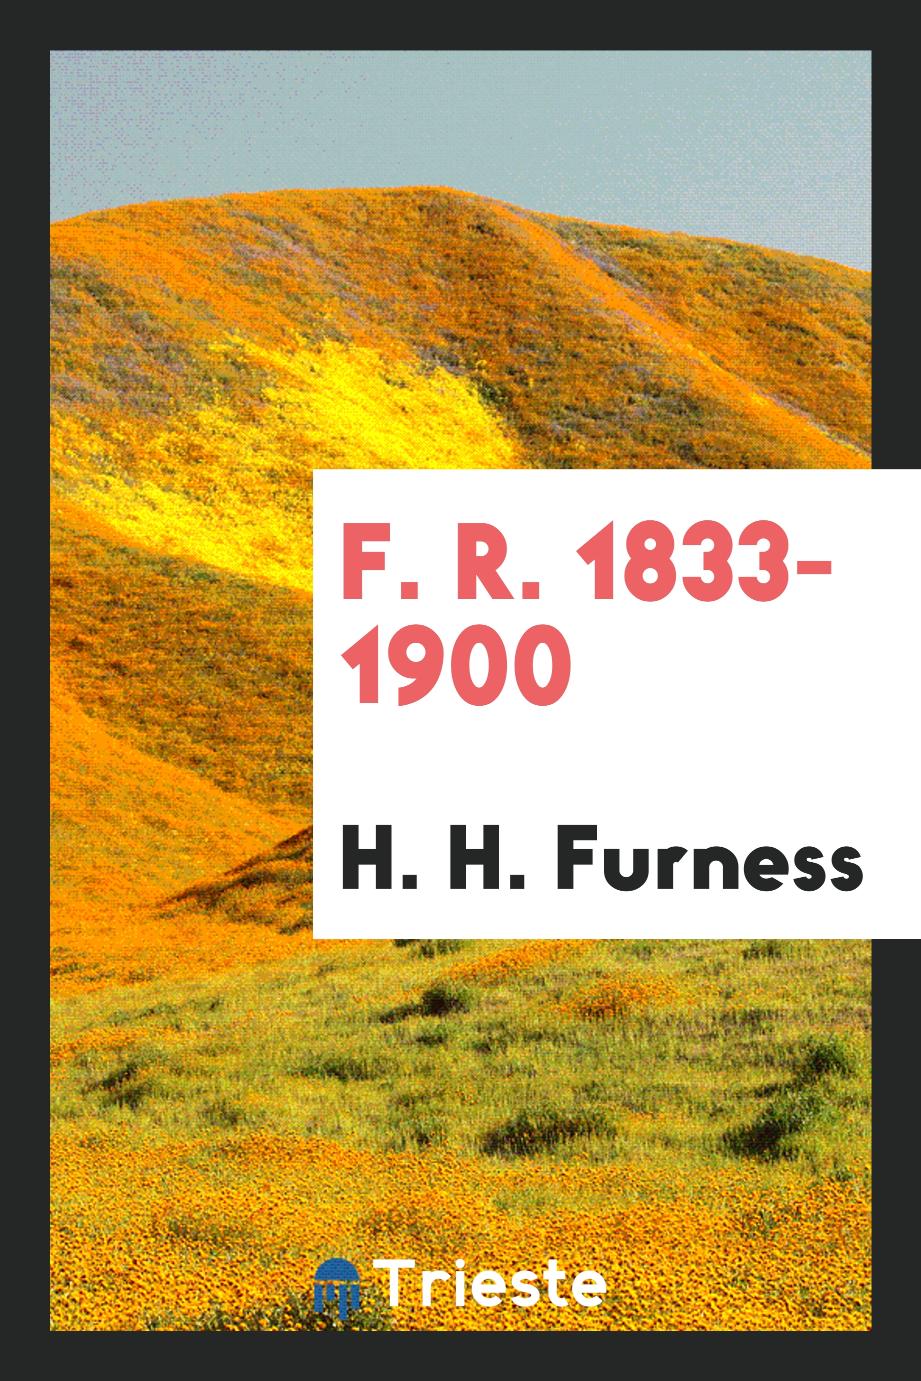 F. R. 1833-1900